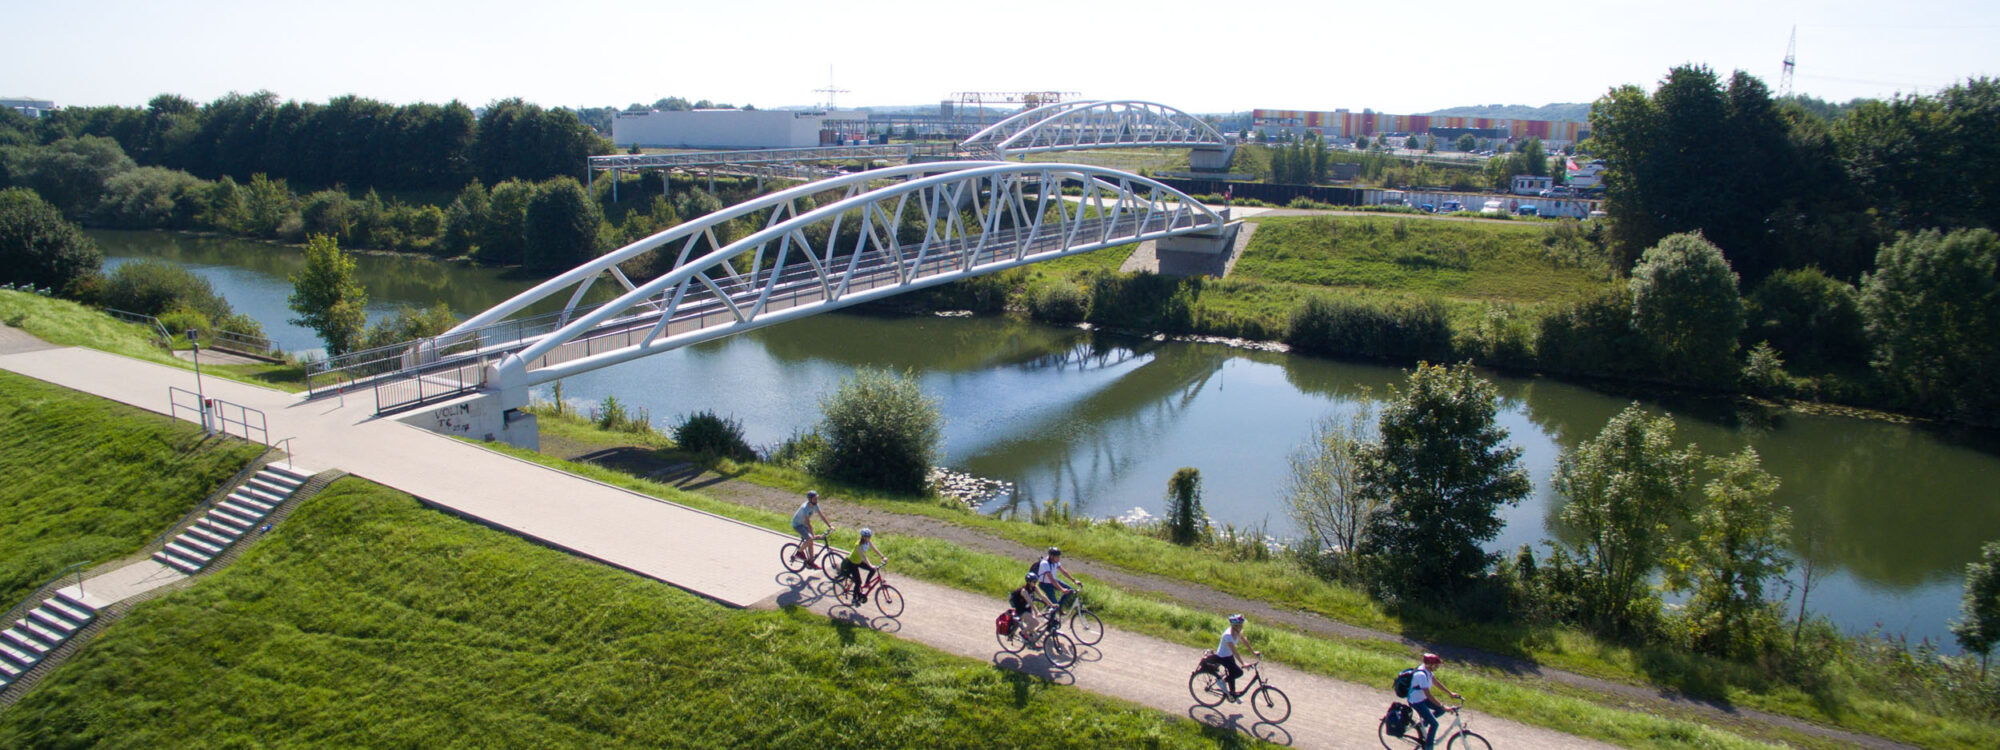 Das Foto zeigt Radfahrende auf dem Radweg am Datteln-Hamm-Kanal in Hamm